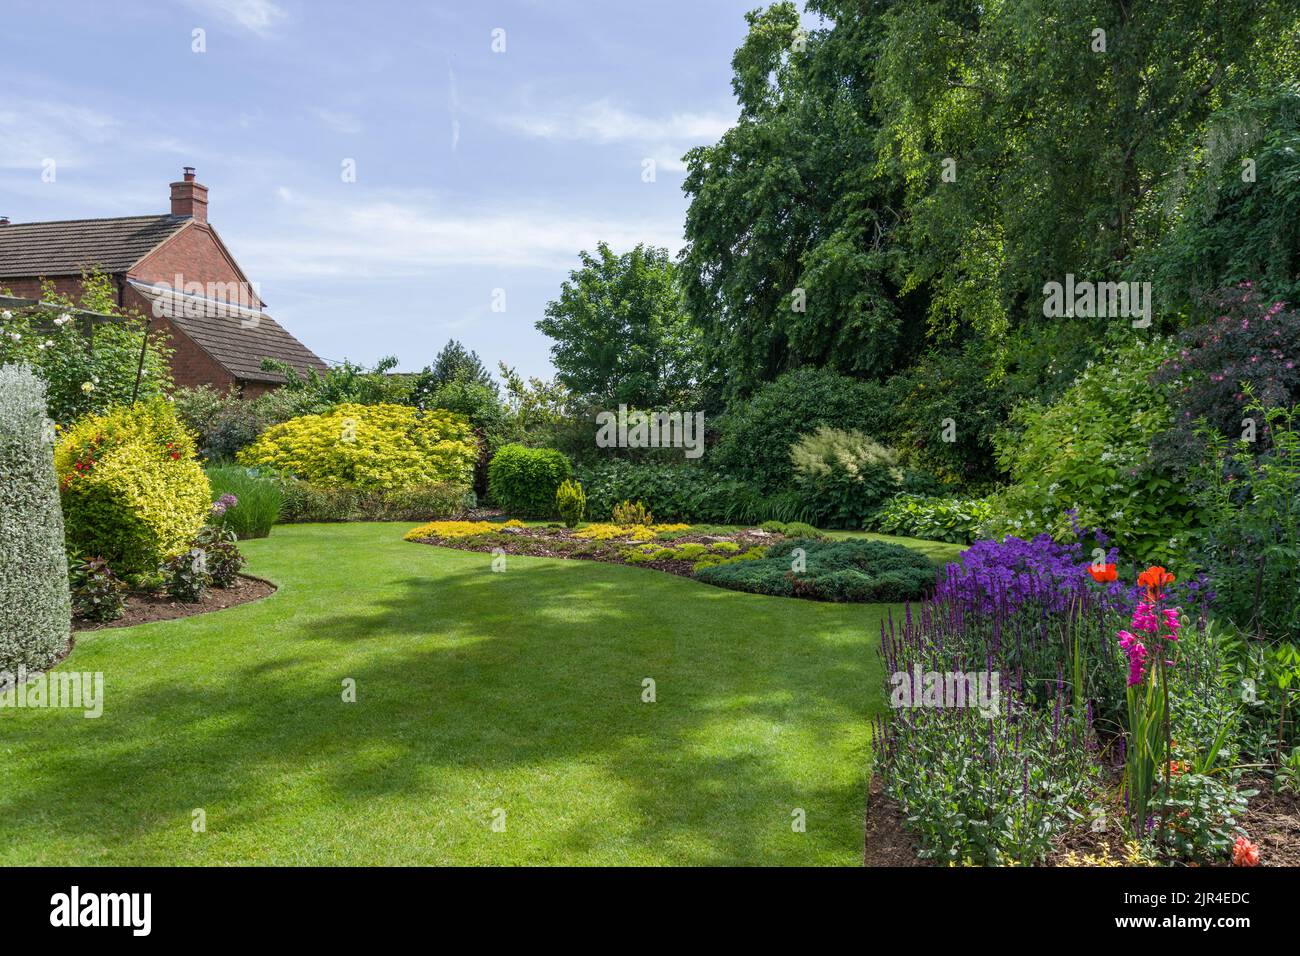 Typischer englischer Vorstadtgarten im Sommer, auf Rasen gelegt, krautige Ränder und Bäume, Gayton Village, Northamptonshire; Teil des offenen Gartenkonzepts Stockfoto